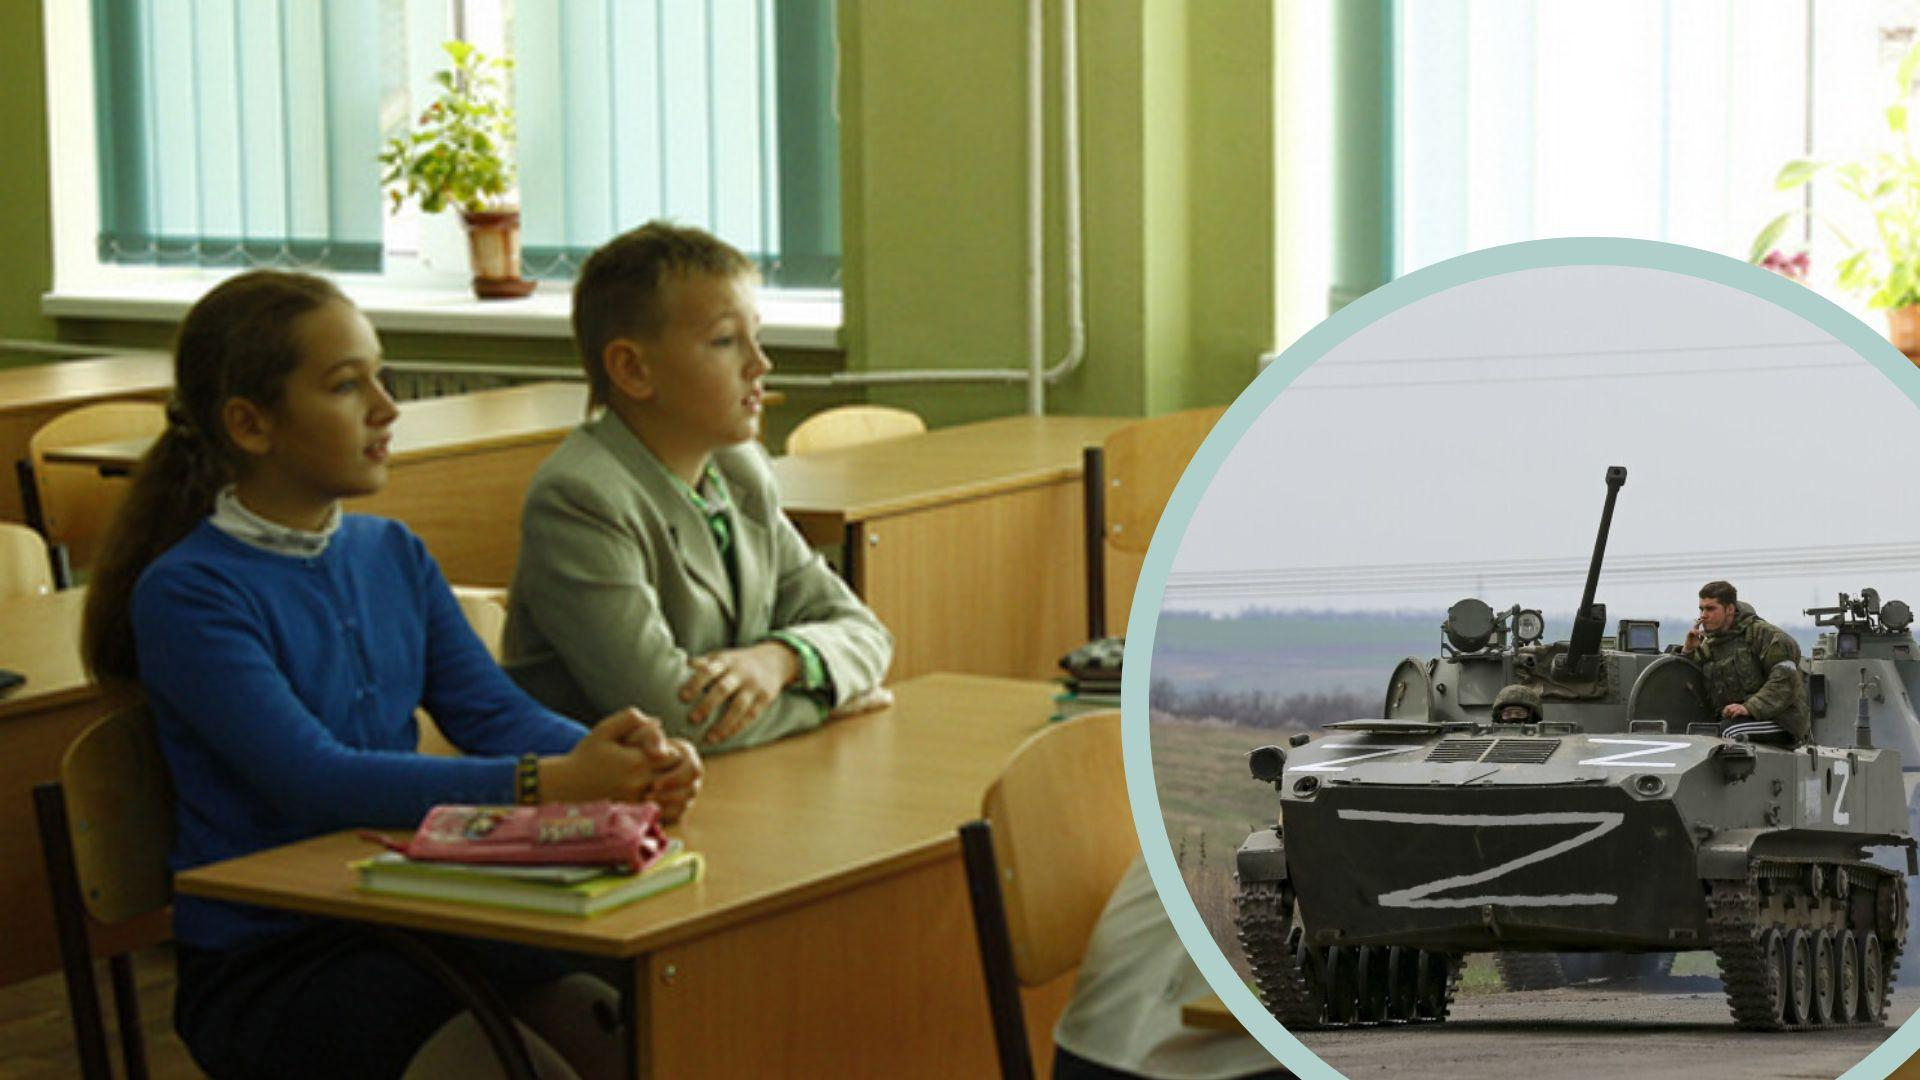 У Мелітополі росіяни хочуть відбирати батьківські права, якщо діти не підуть в їх школу